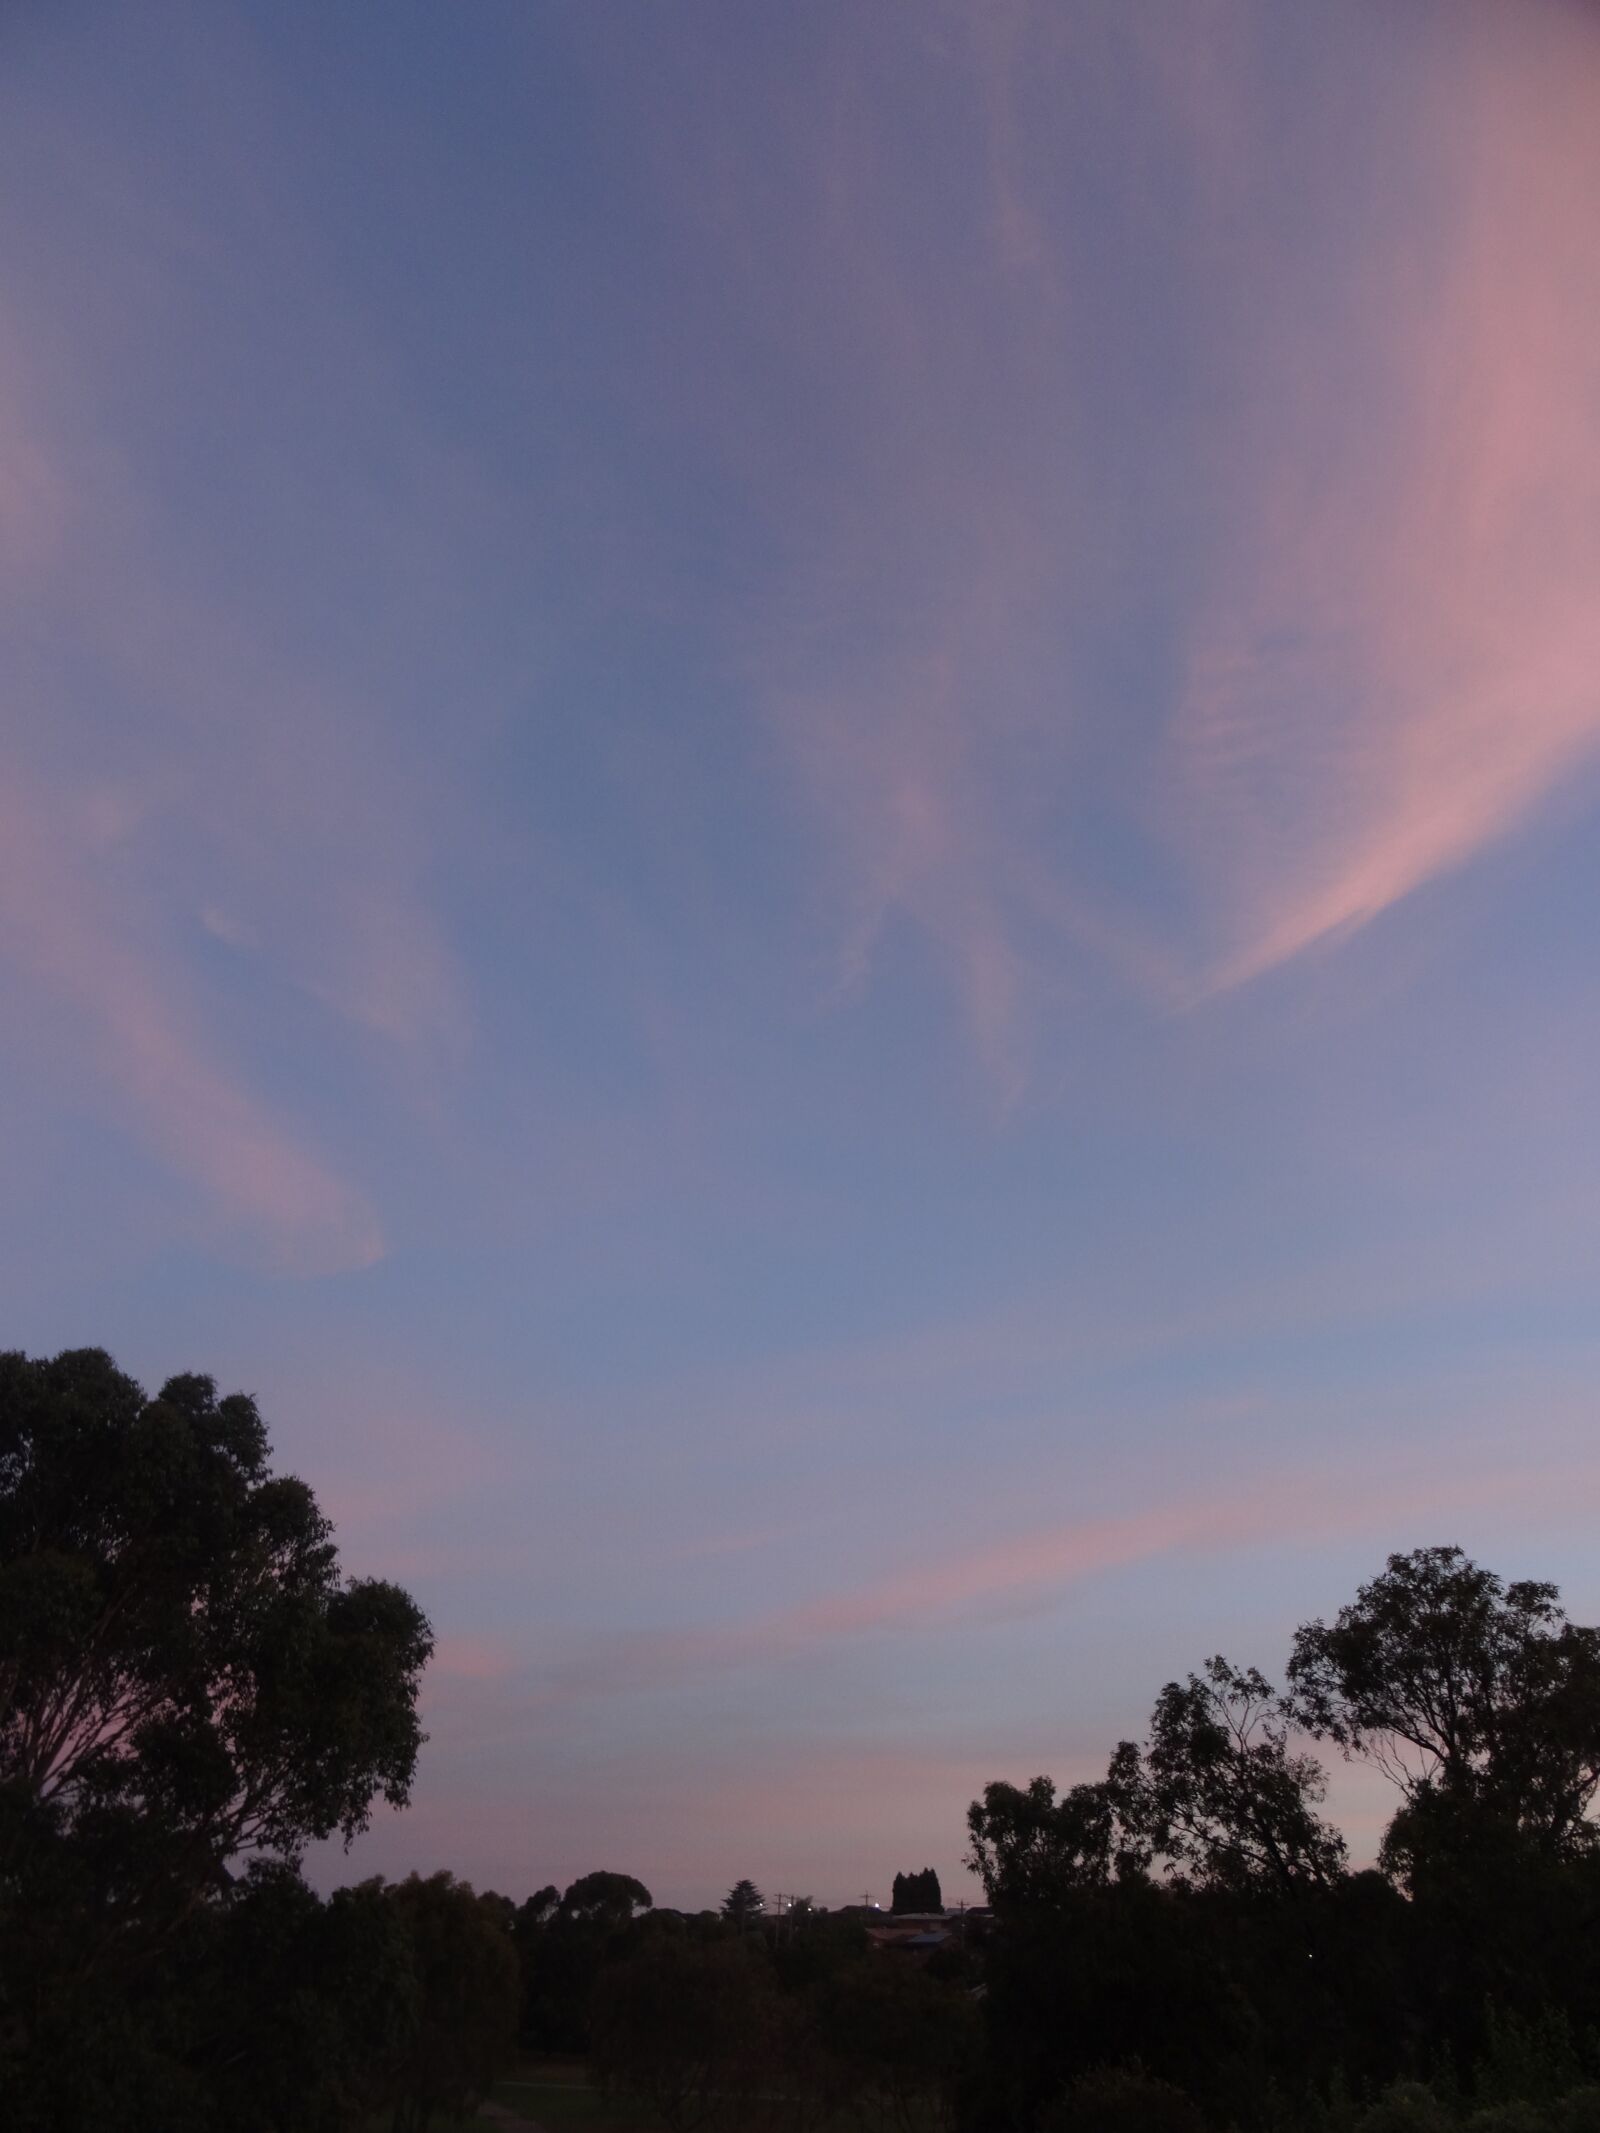 Sony Cyber-shot DSC-HX50V sample photo. Pink clouds, morning sky photography